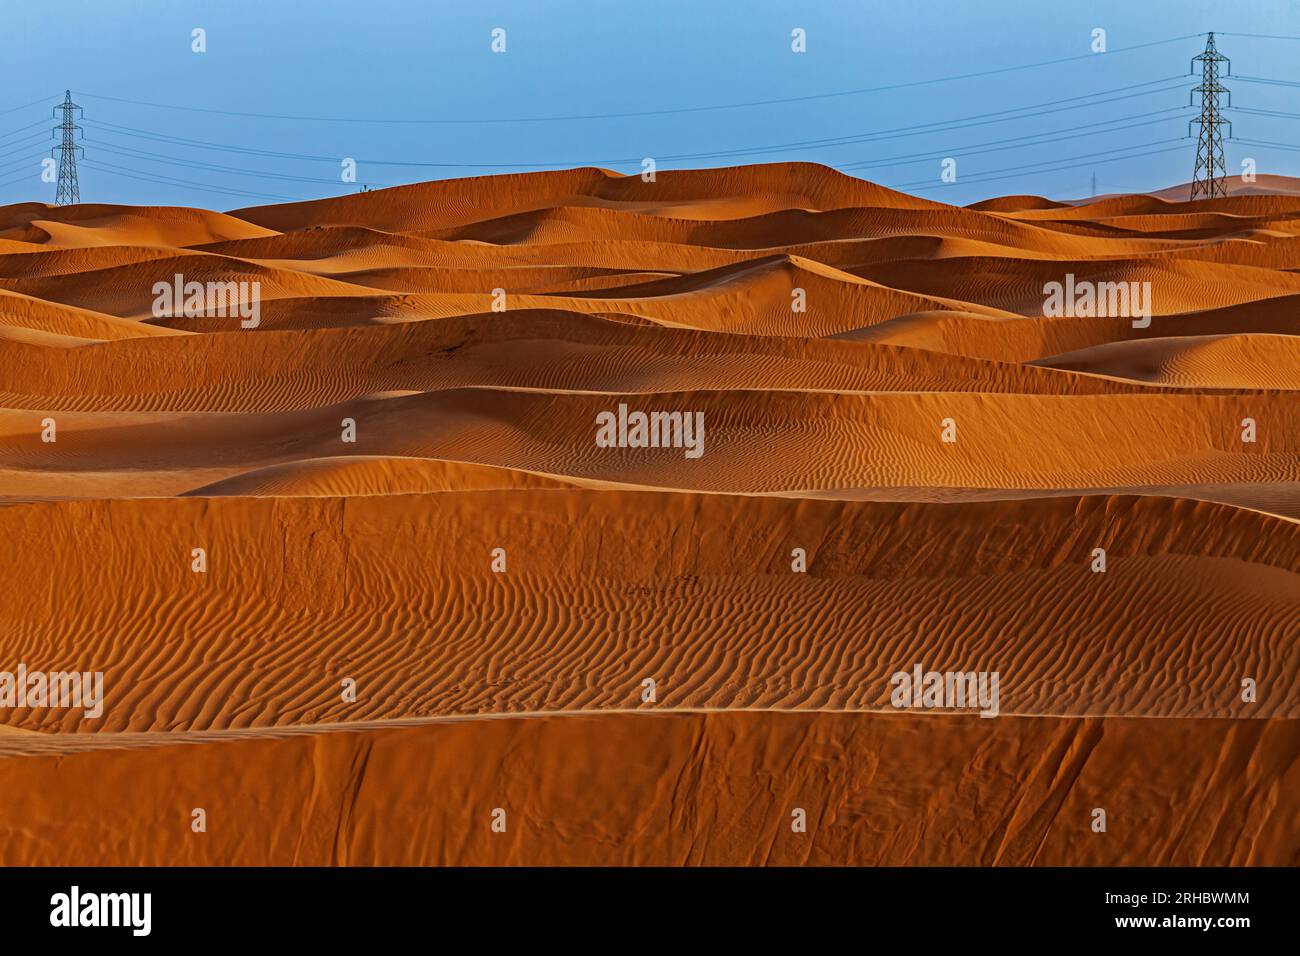 Pilones de electricidad entre dunas de arena naranja en el desierto, Arabia Saudita Foto de stock